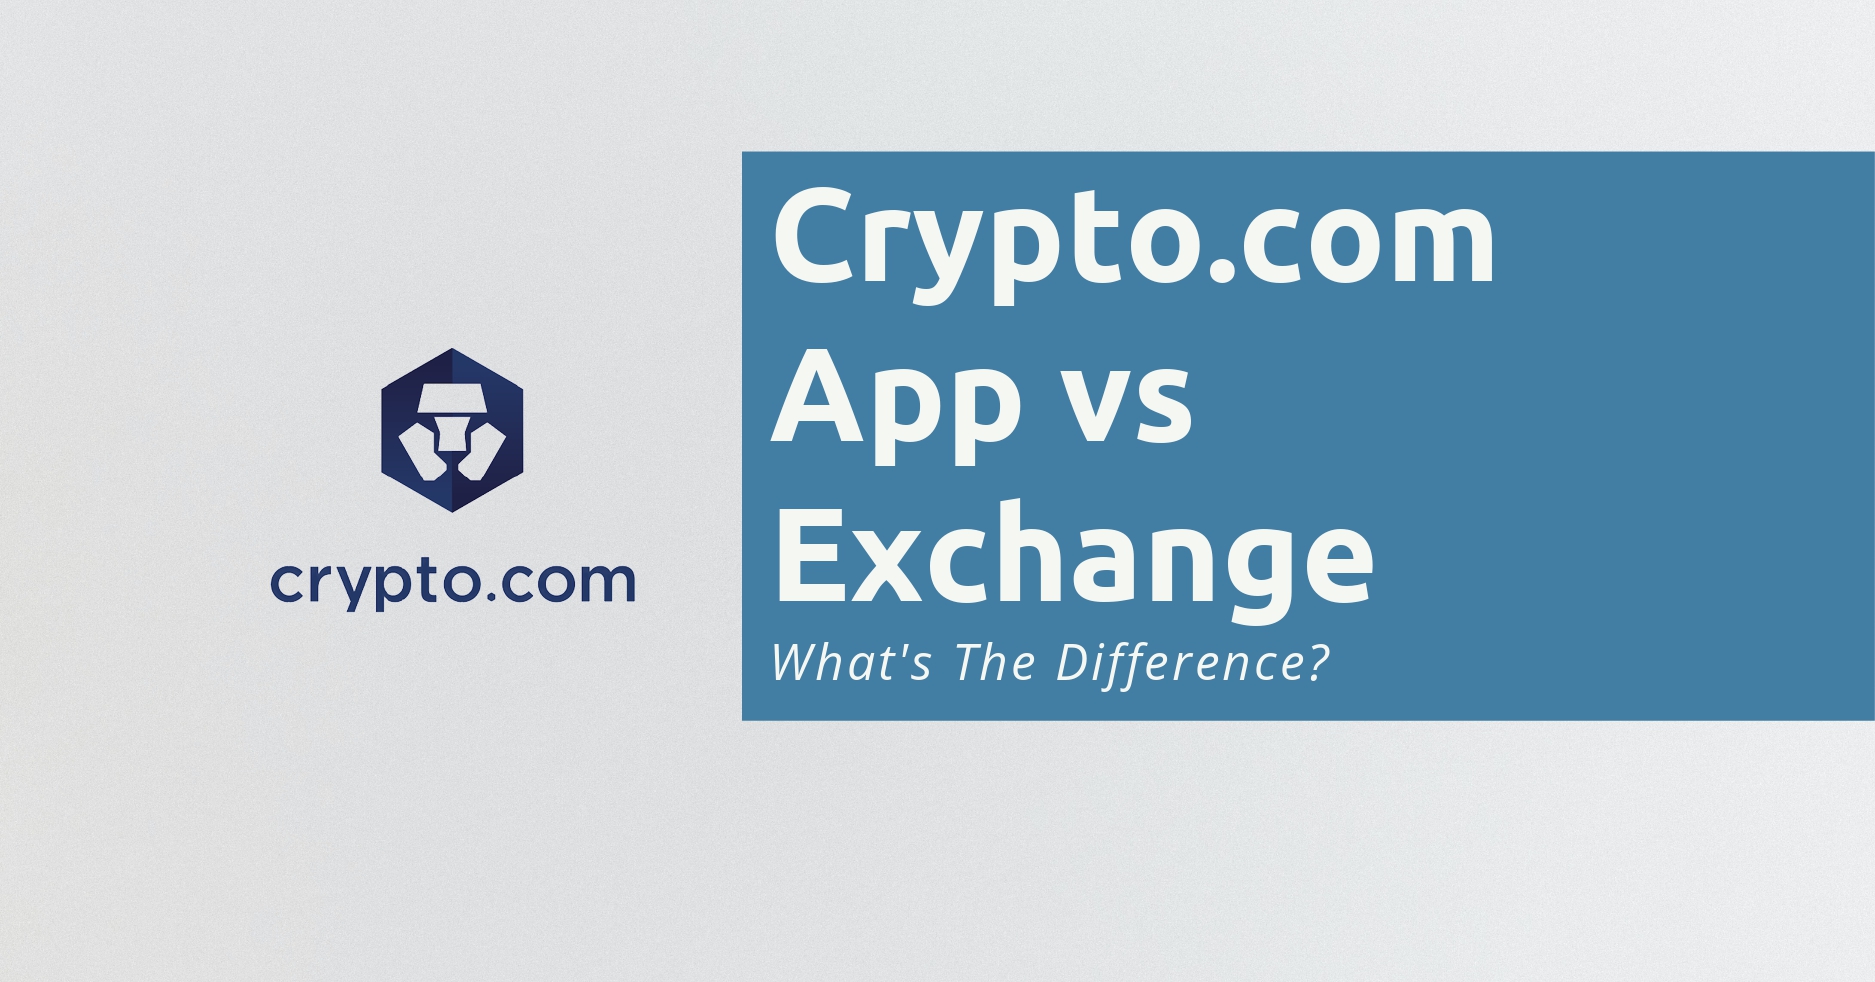 crypto.com app vs crypto.com exchange